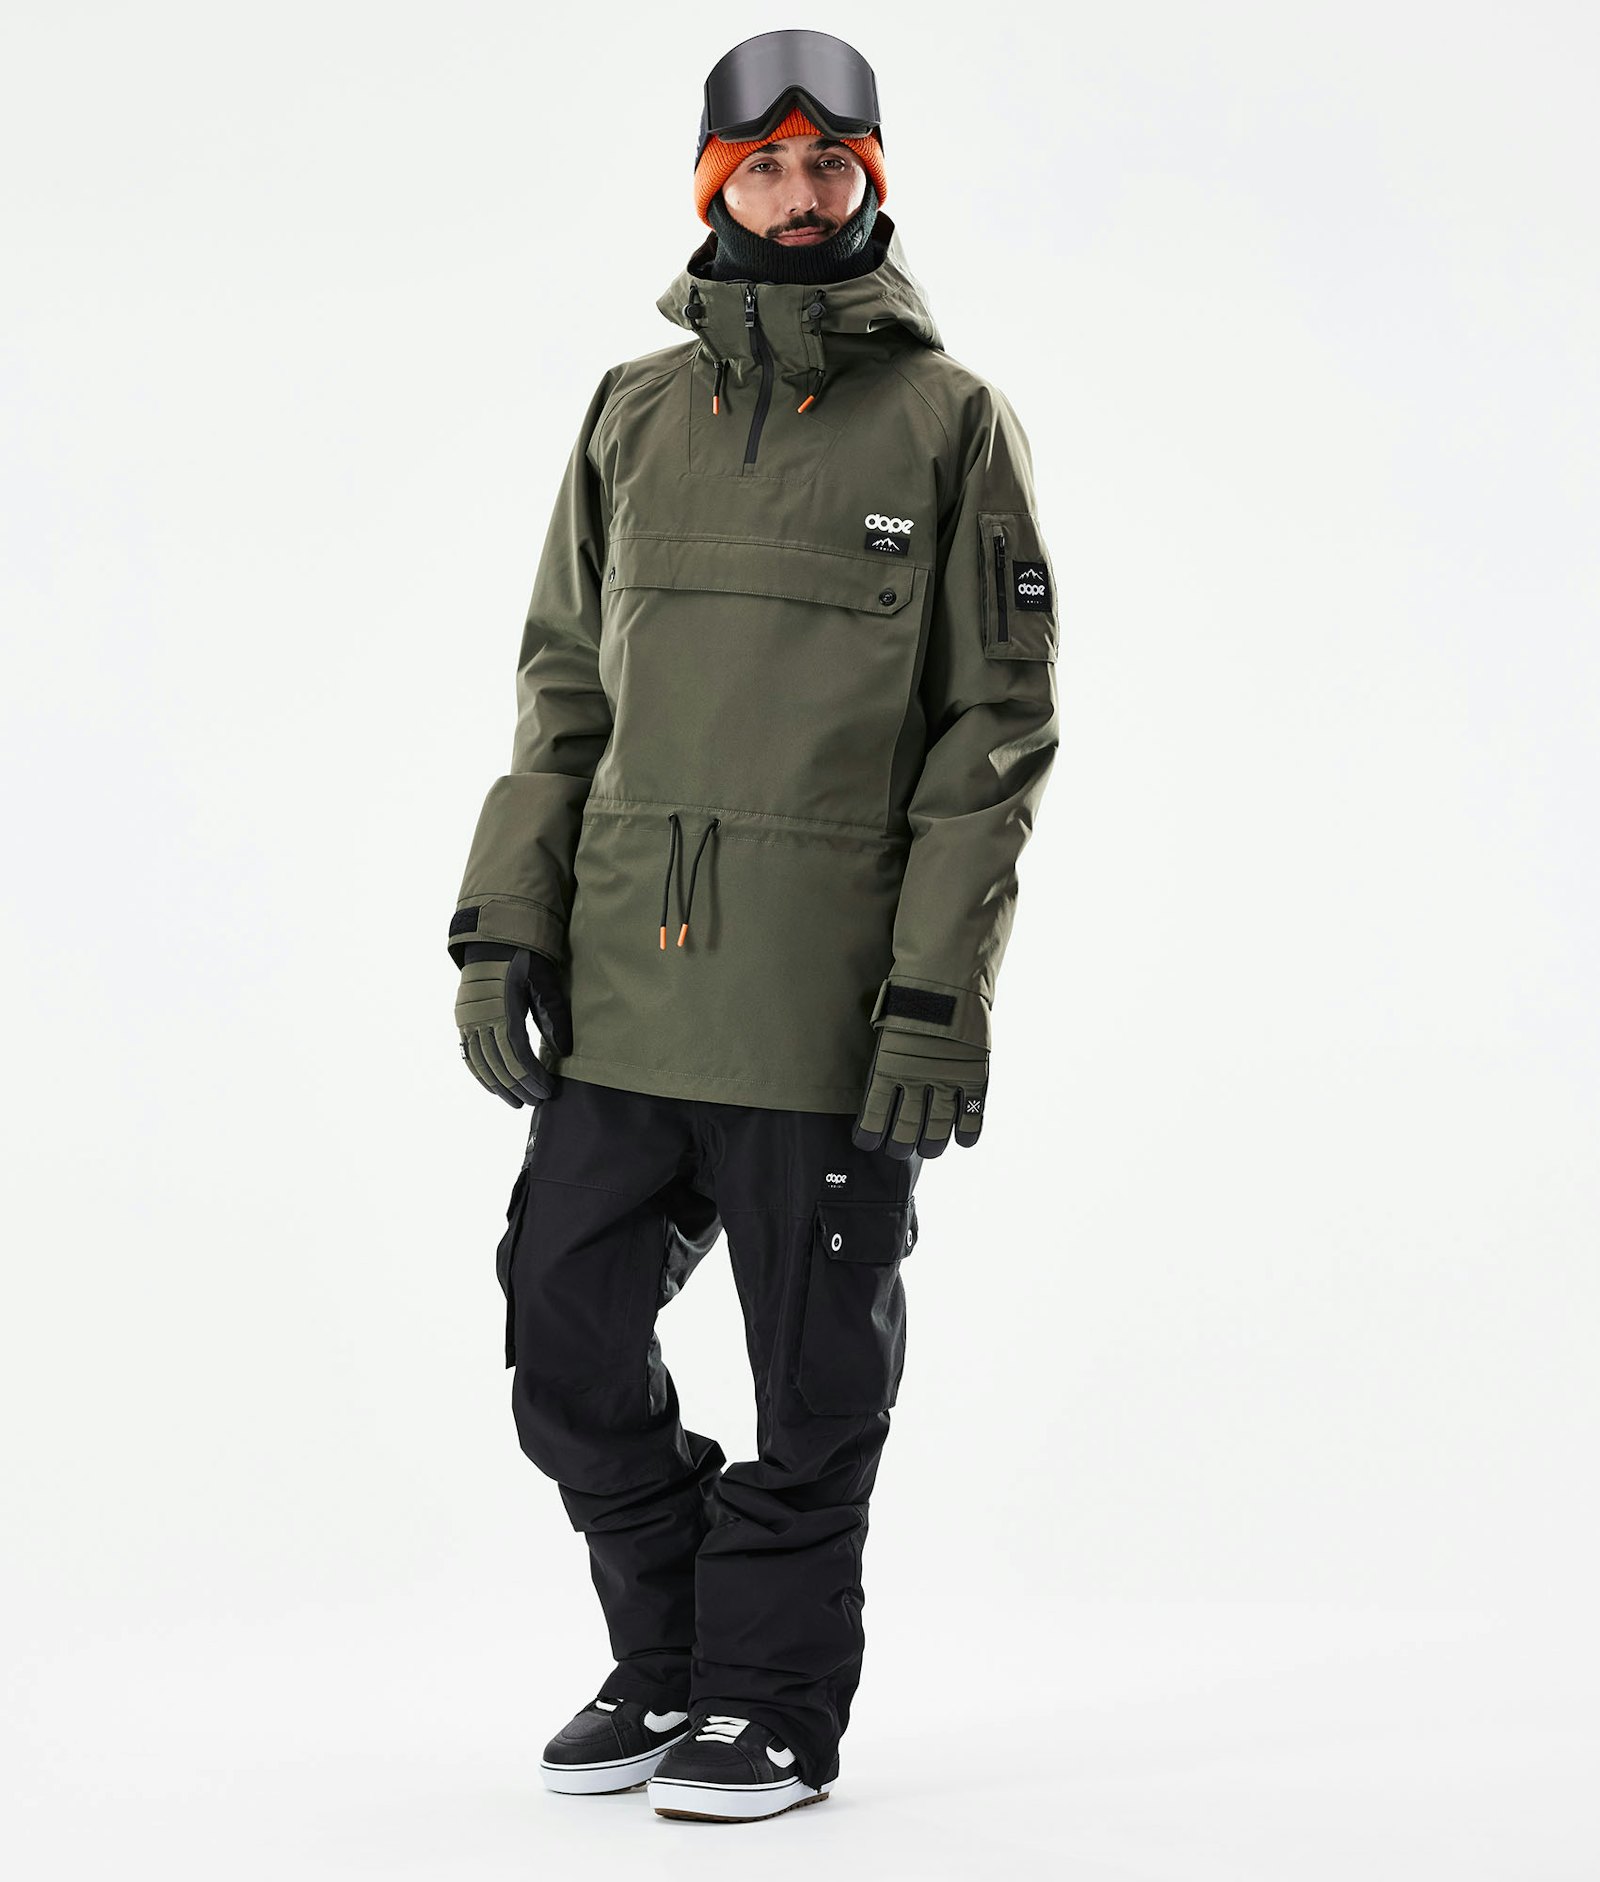 Annok 2021 Veste Snowboard Homme Olive Green/Black